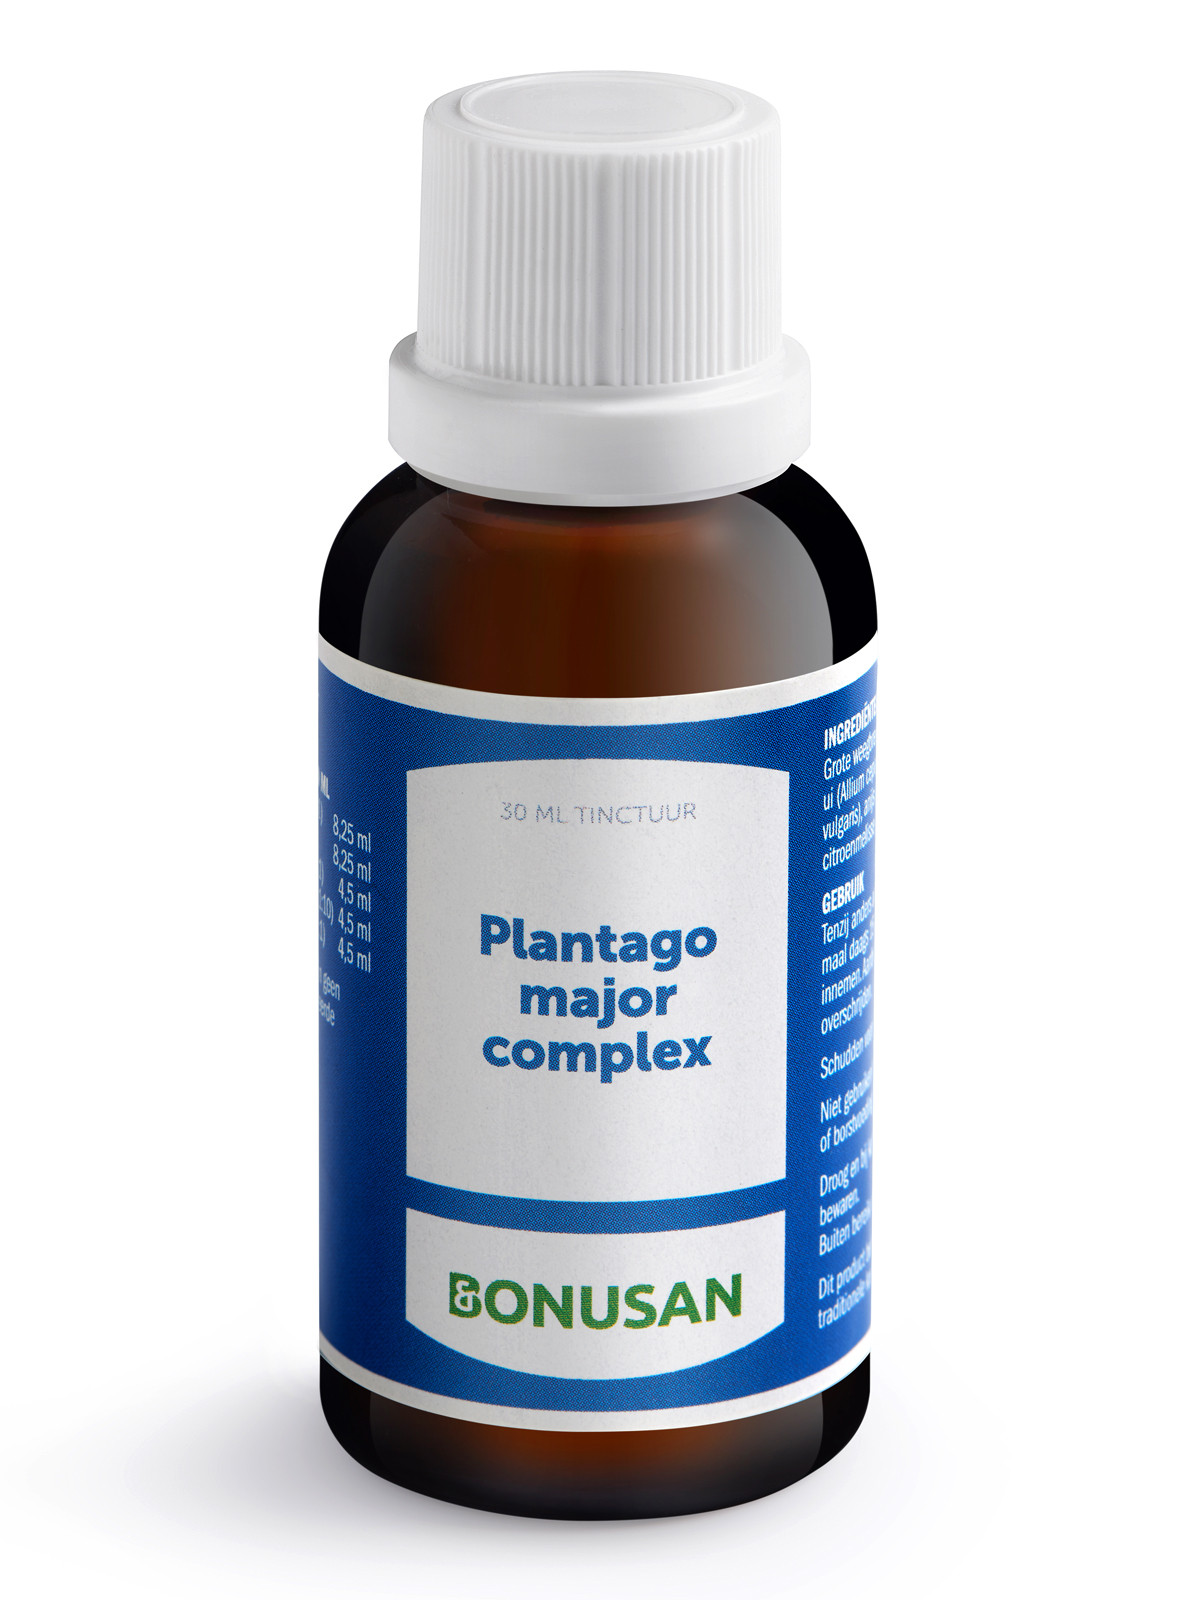 Bonusan - Plantago major complex